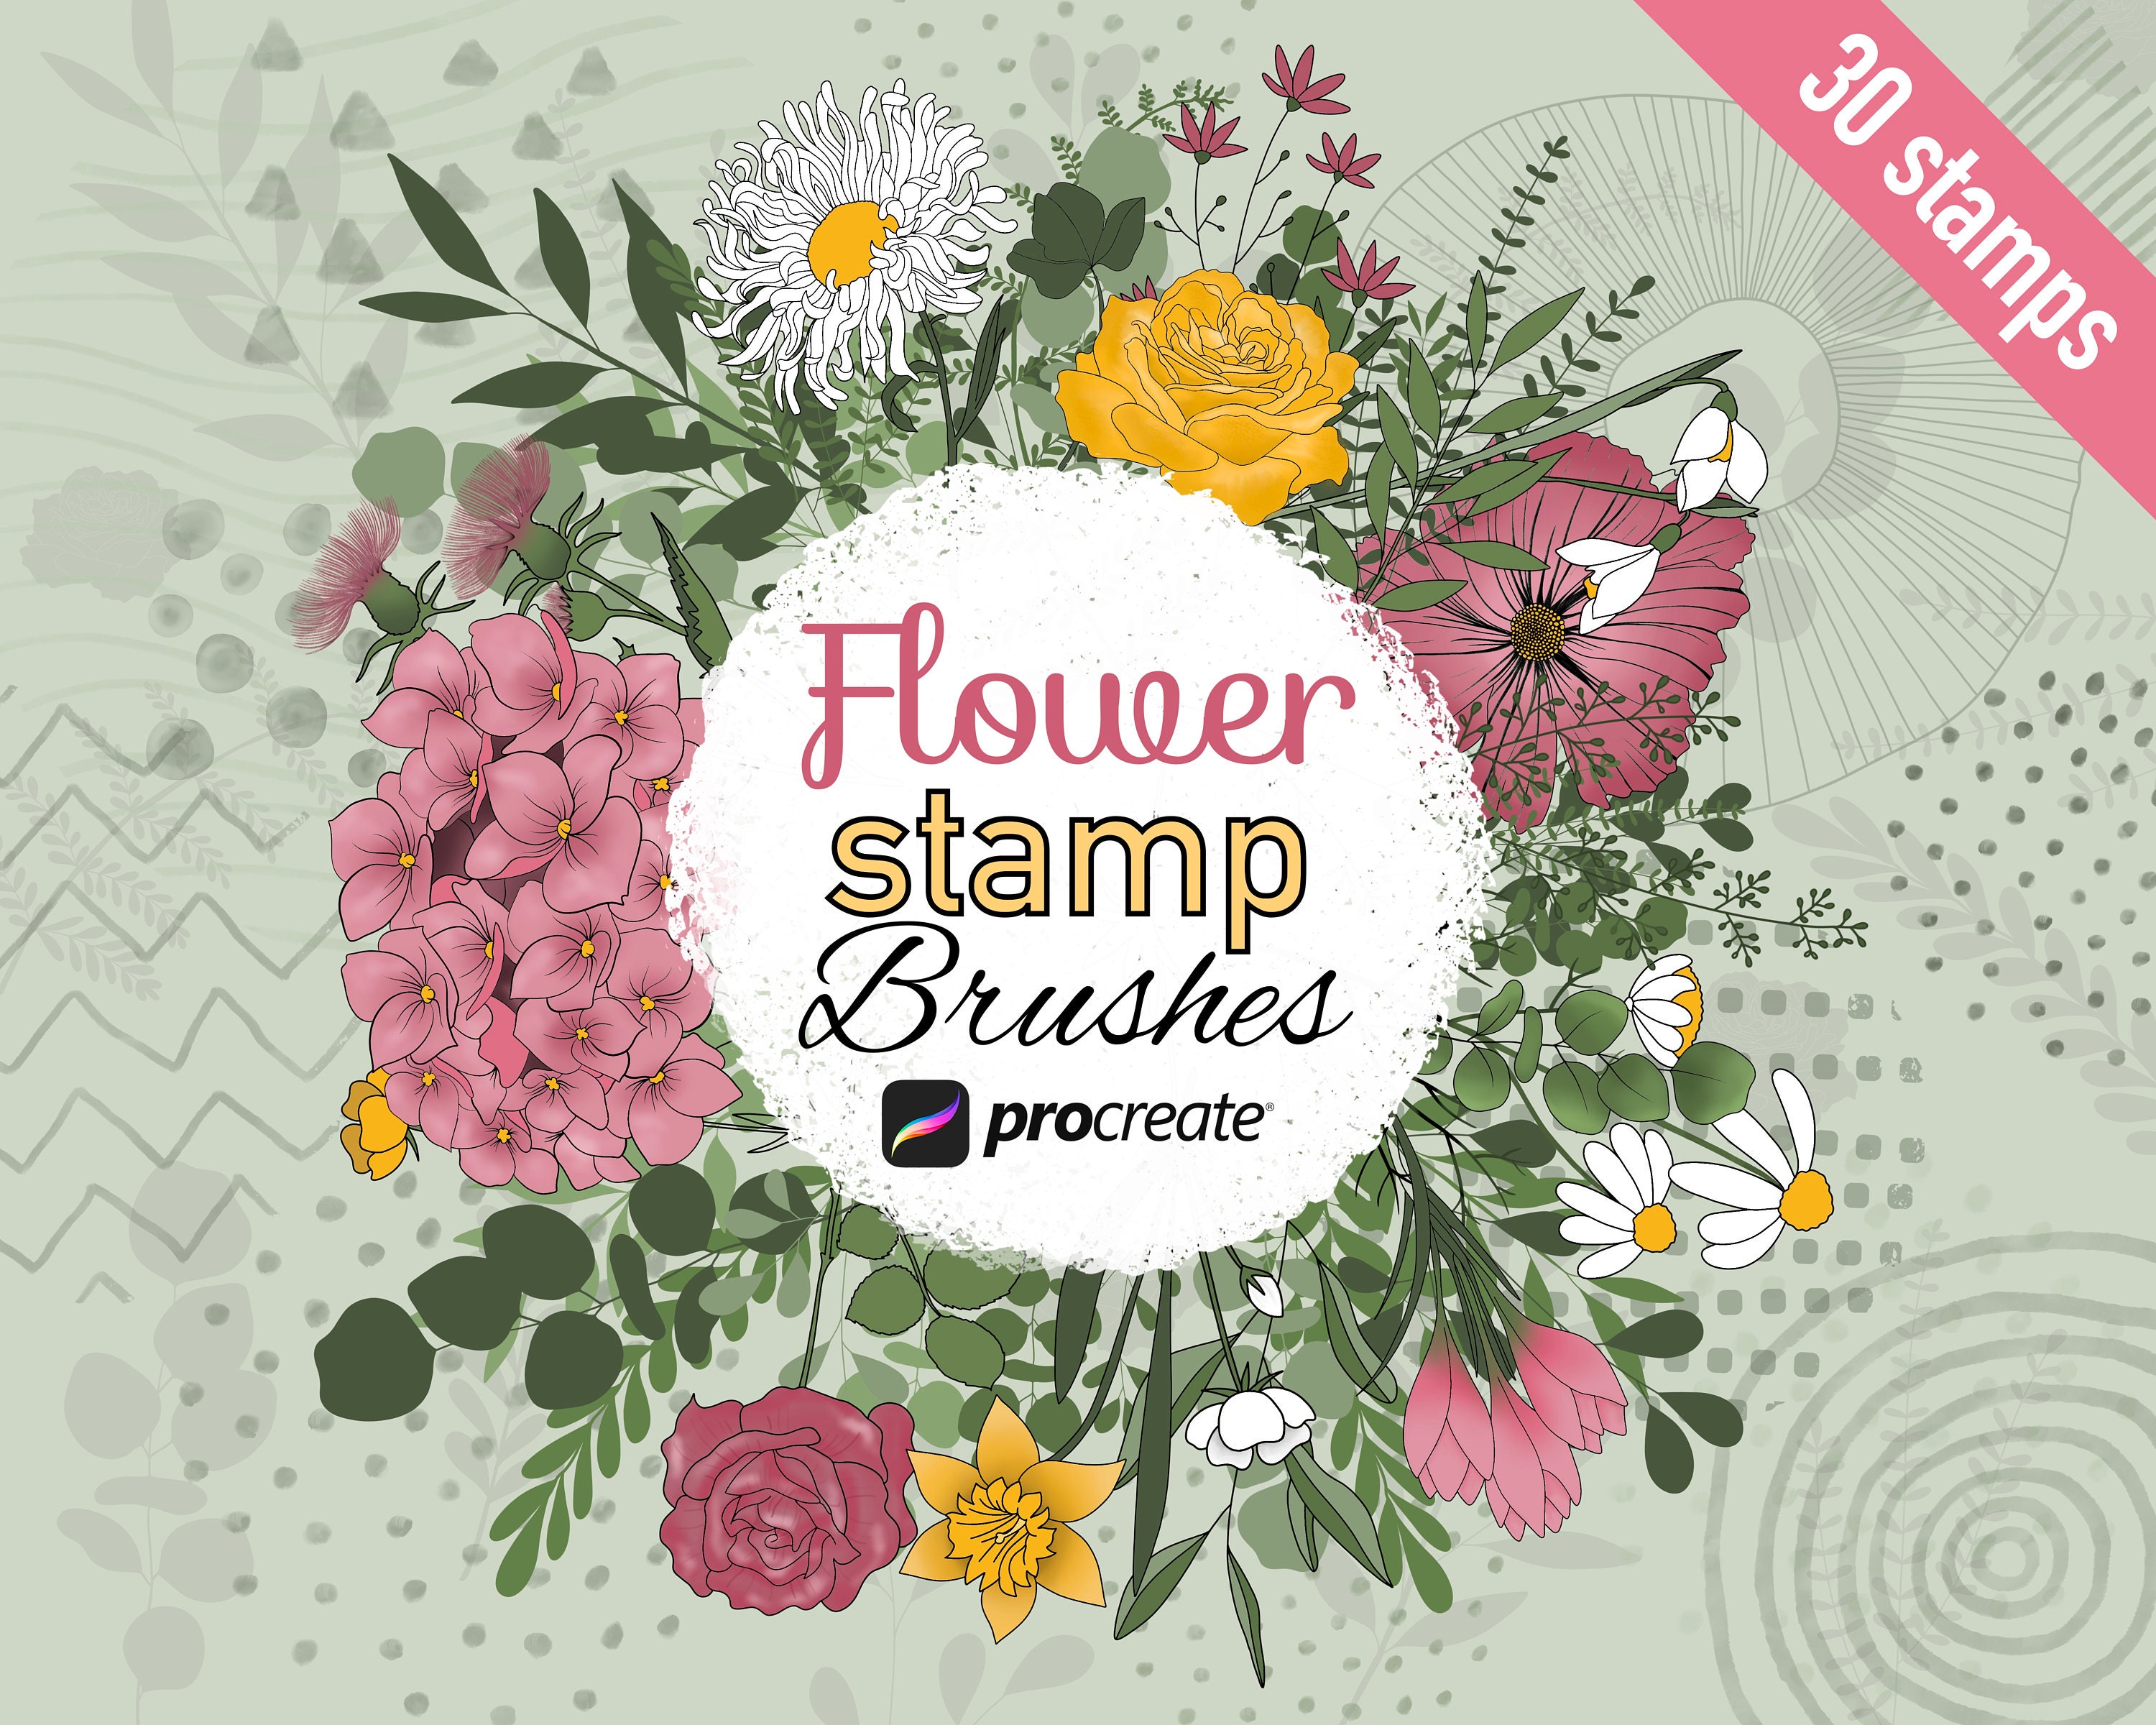 100 Procreate Flower Stamps Procreate Flower Stamps Floral Procreate  Procreate Botanical Flower Stamps Procreate Flower Brushes 